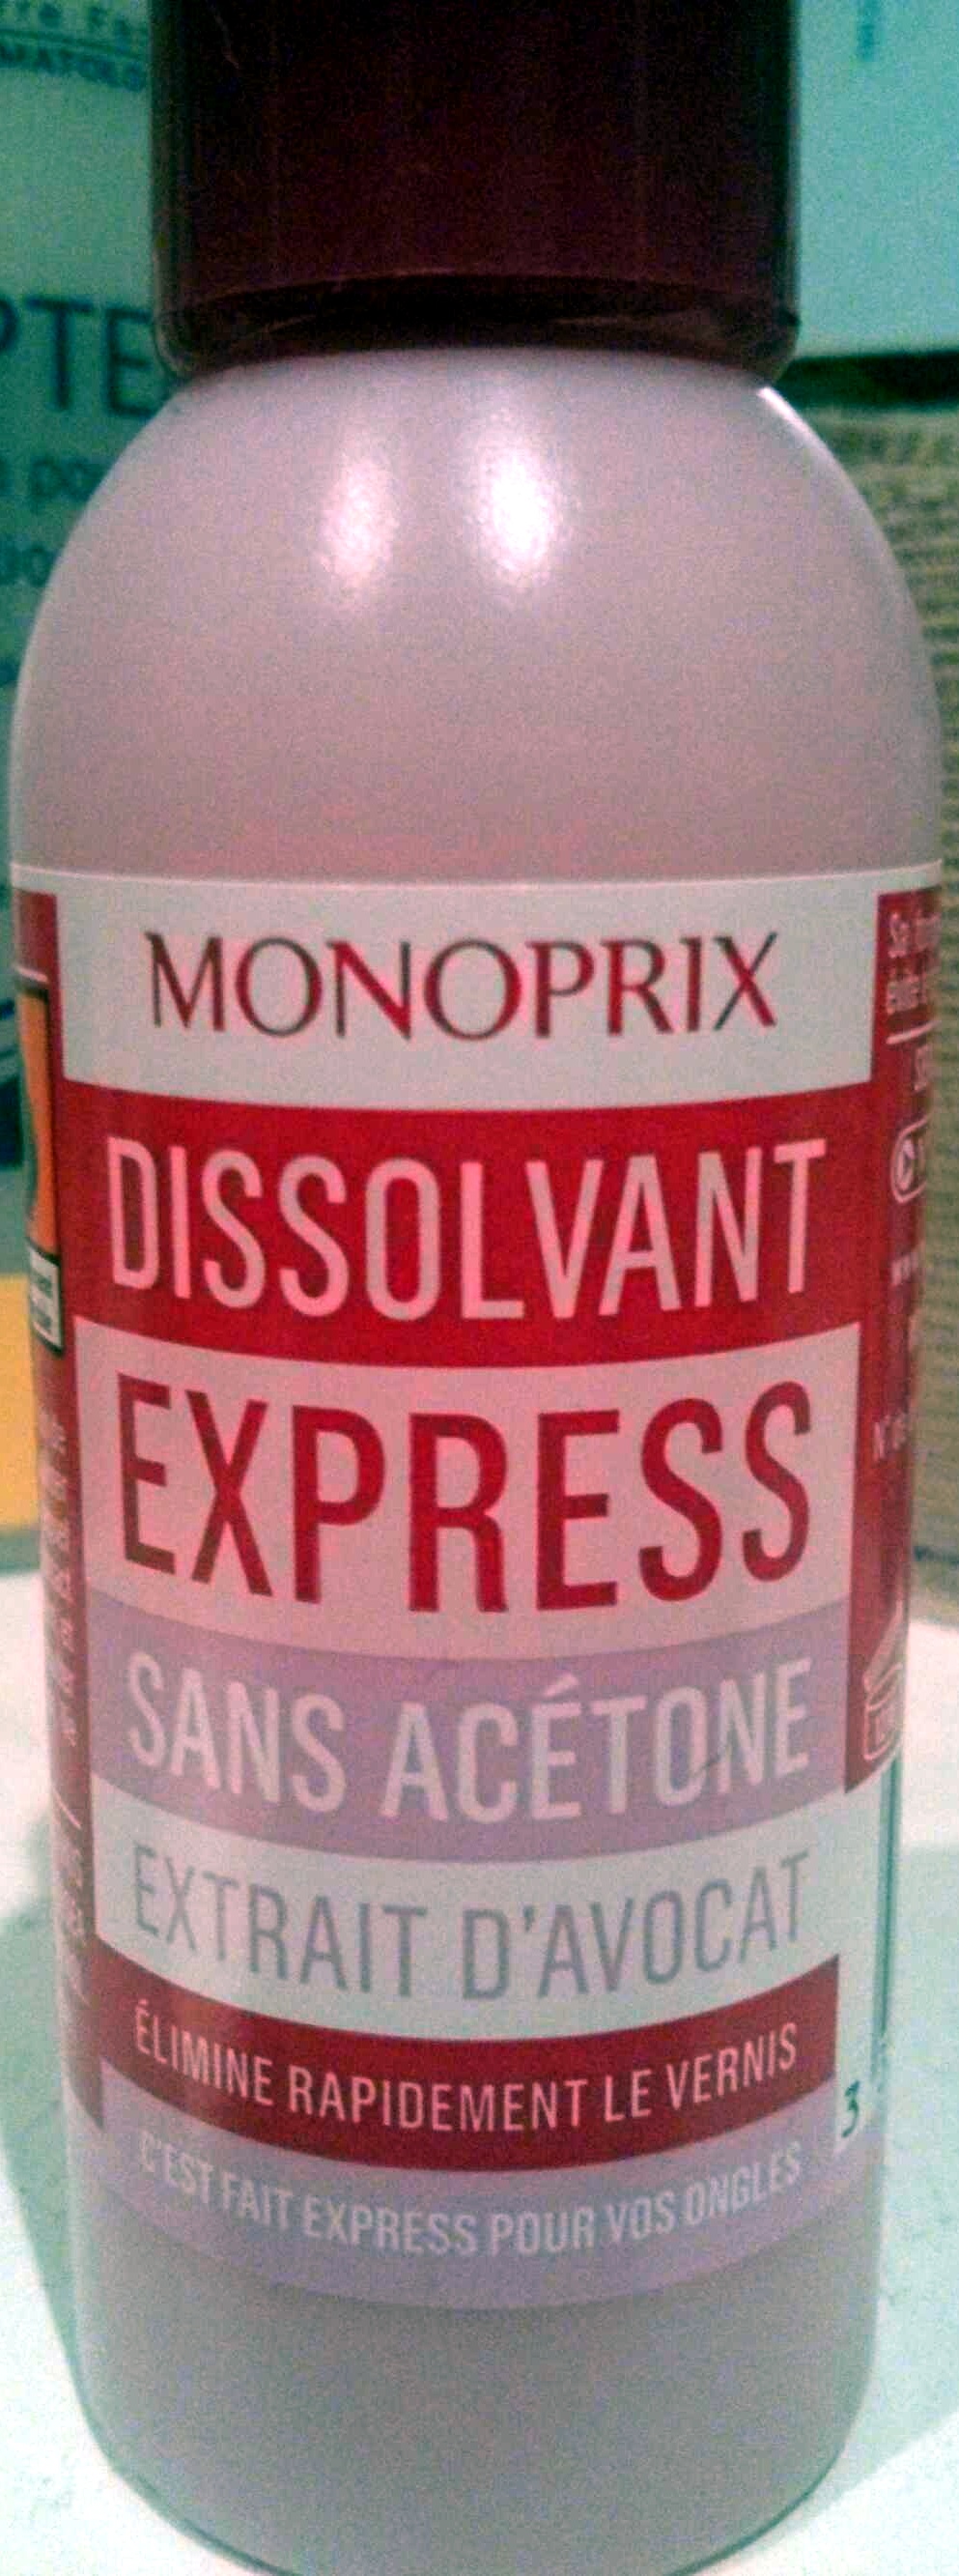 Dissolvant express sans acétone extrait d'avocat - Tuote - fr